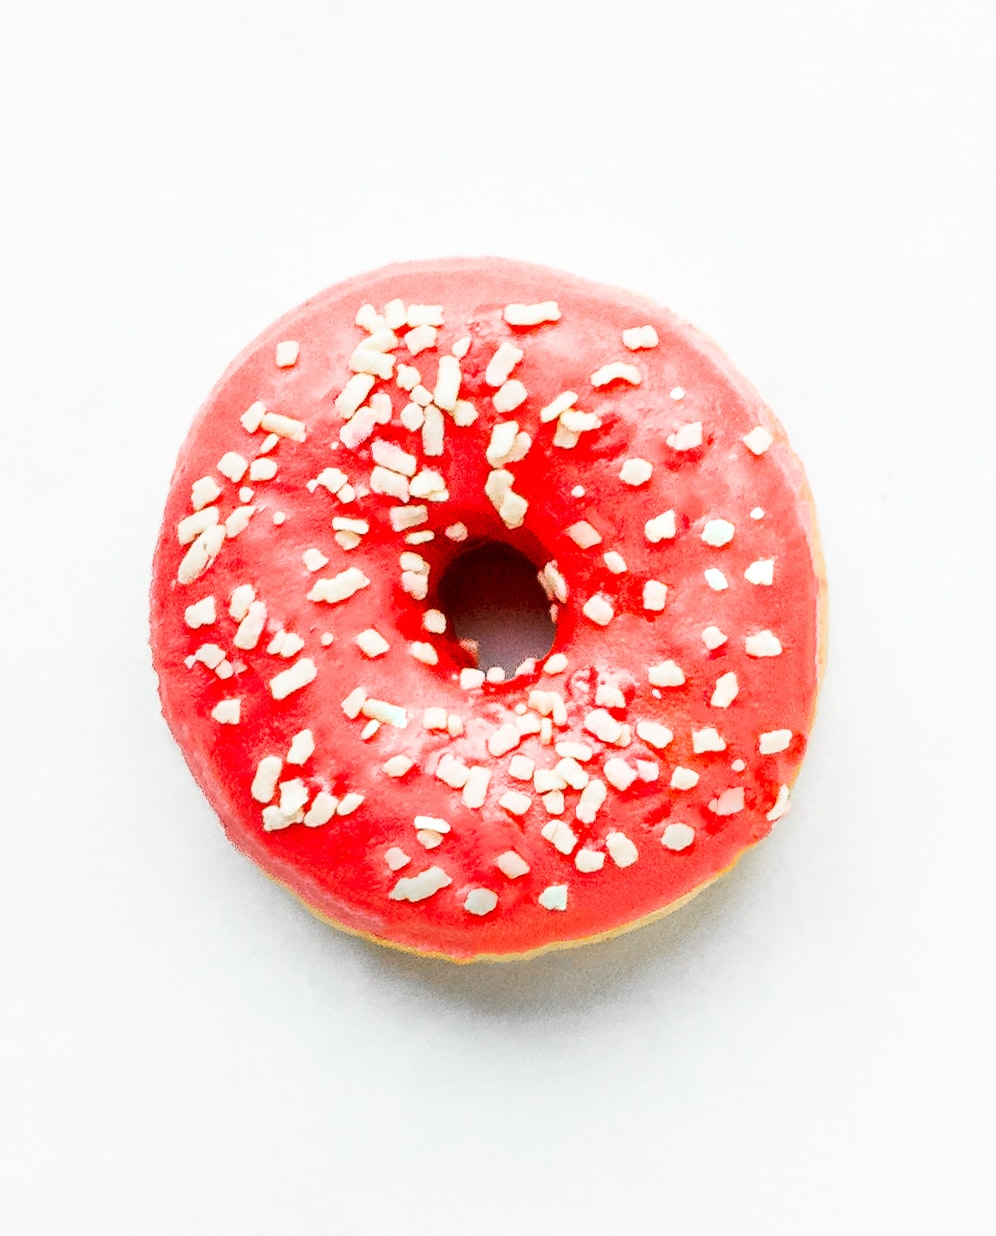 cherry glaze donut with white sprinkles